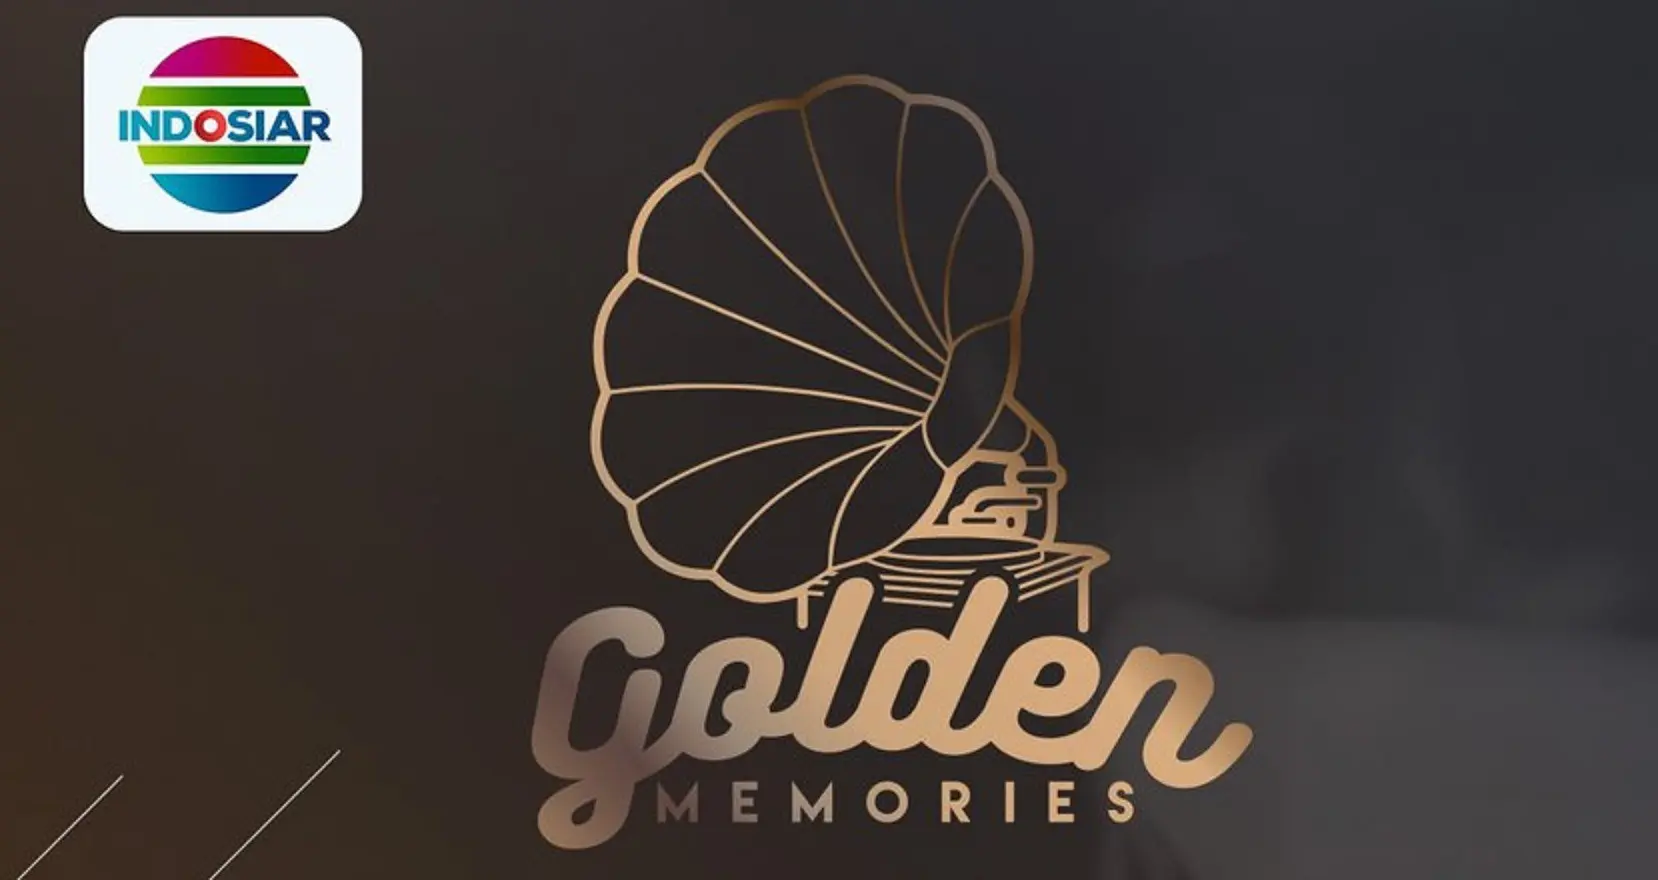 Golden Memories vol 2 siap dimulai malam ini